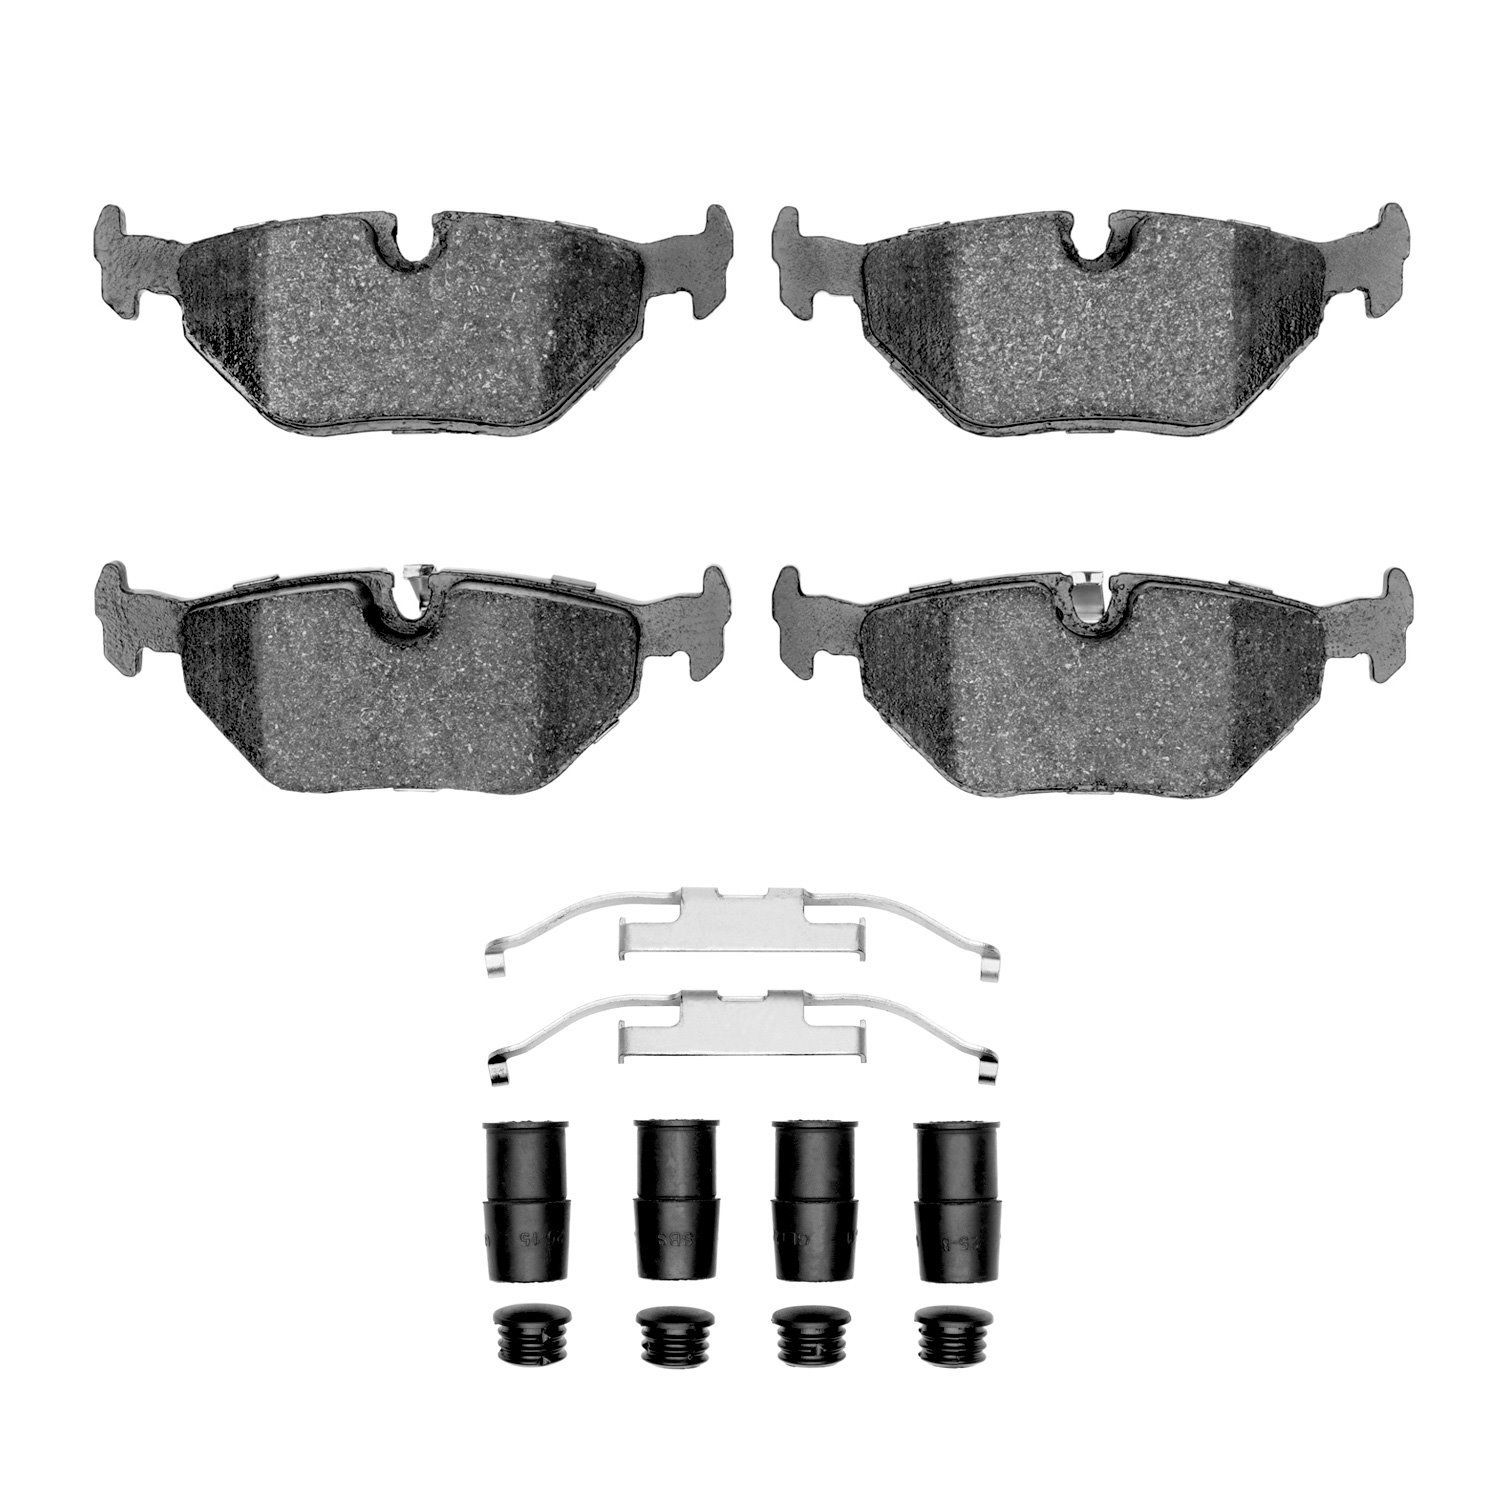 Optimum OE Brake Pads & Hardware Kit, 1996-2000 BMW, Position: Rear